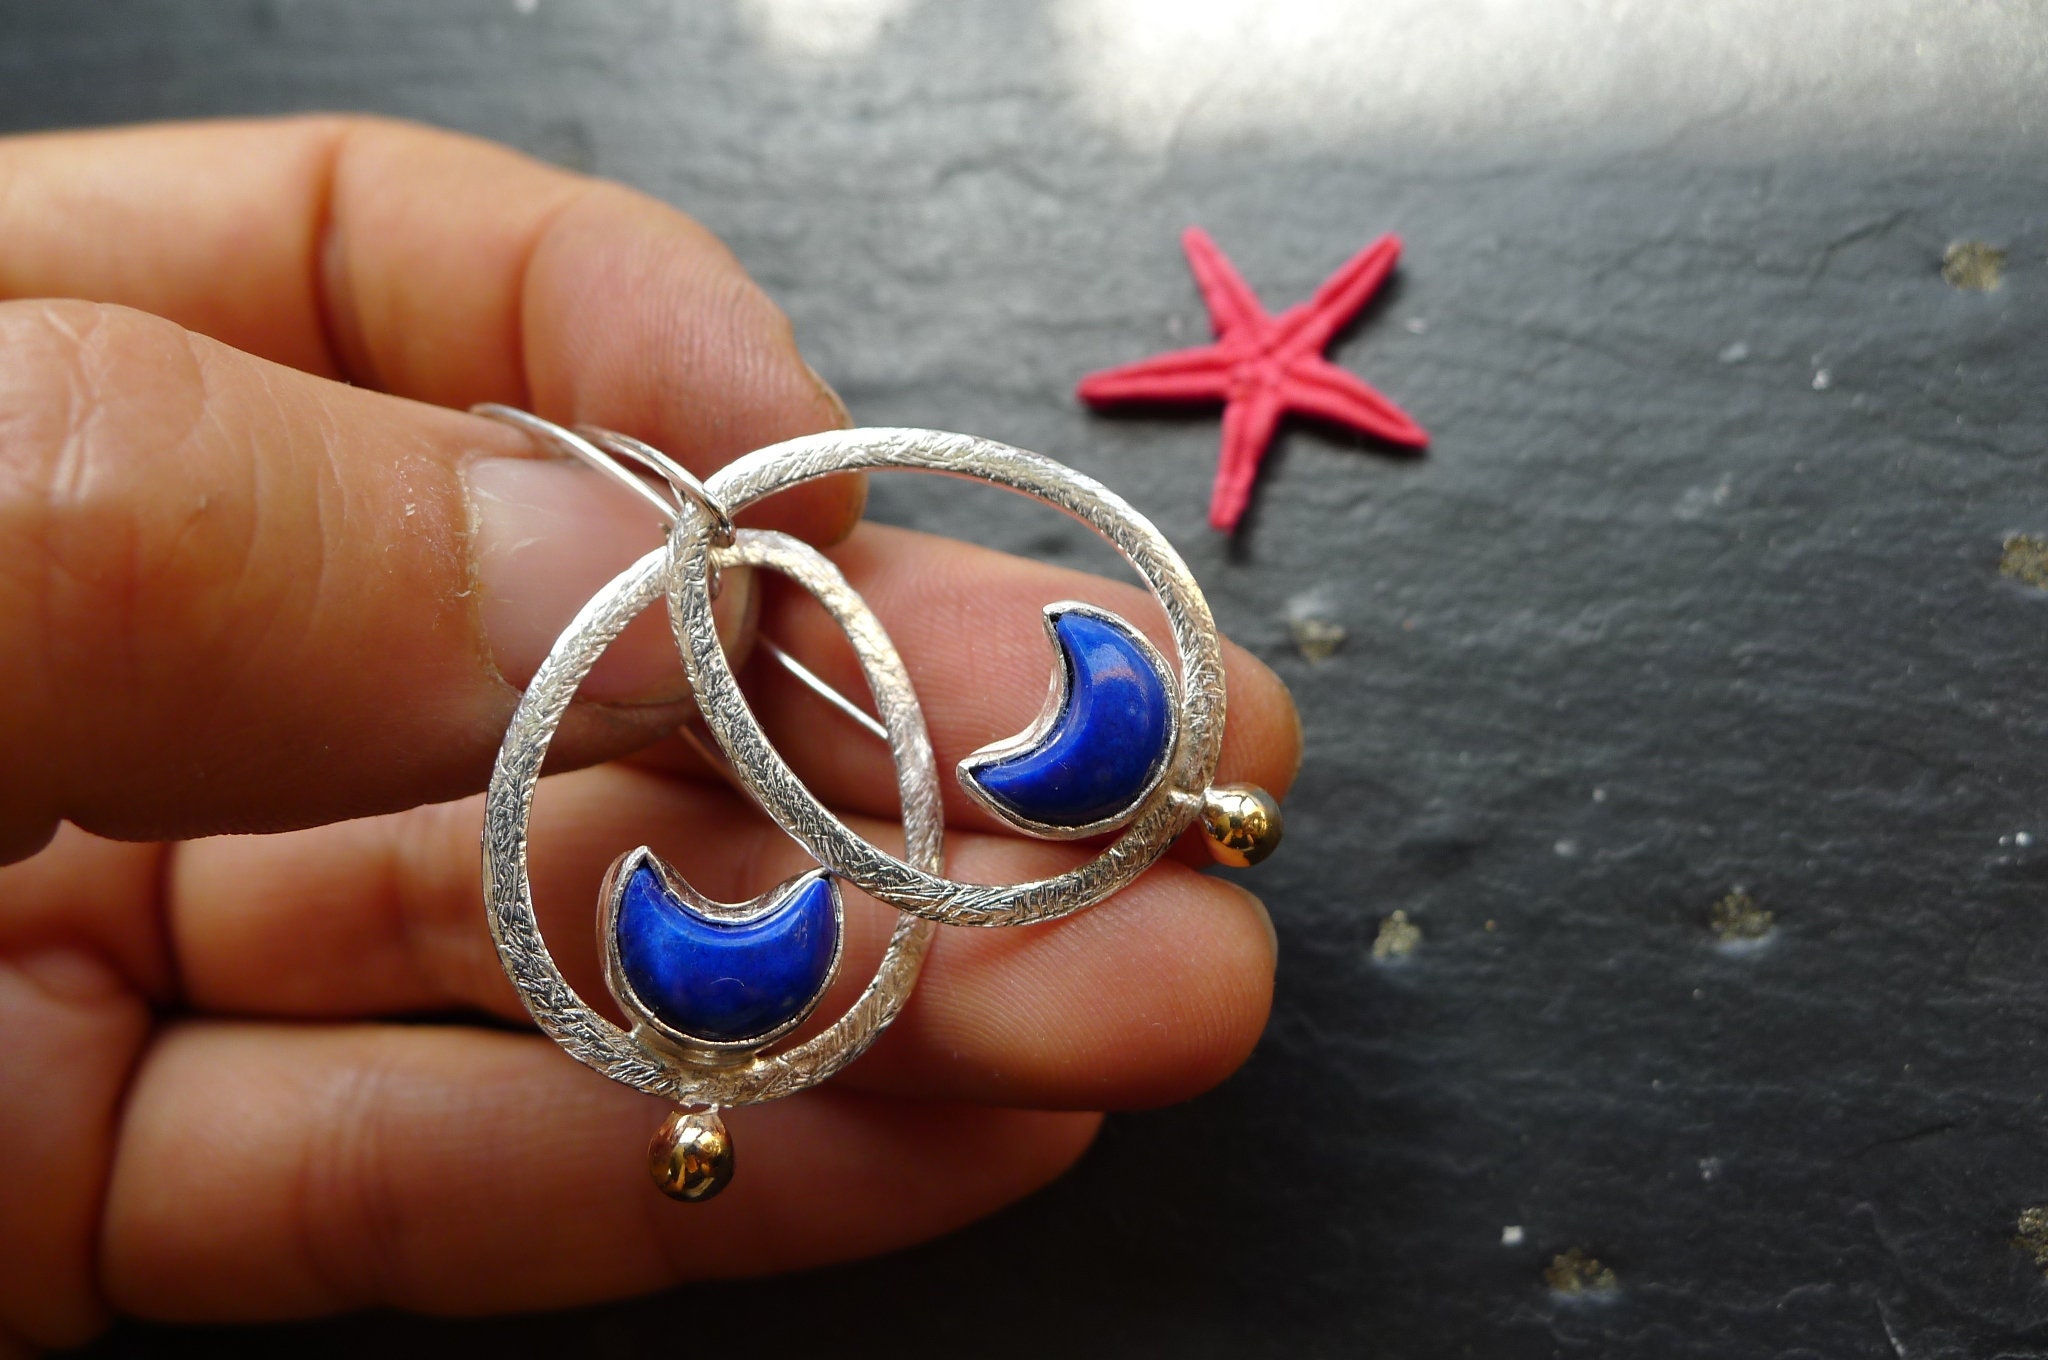 one of a kind earrings BOHO LAPISL\u00c1ZULI EARRINGS medium earrings tribal earrings summer jewelry sterling silver+gold earrings